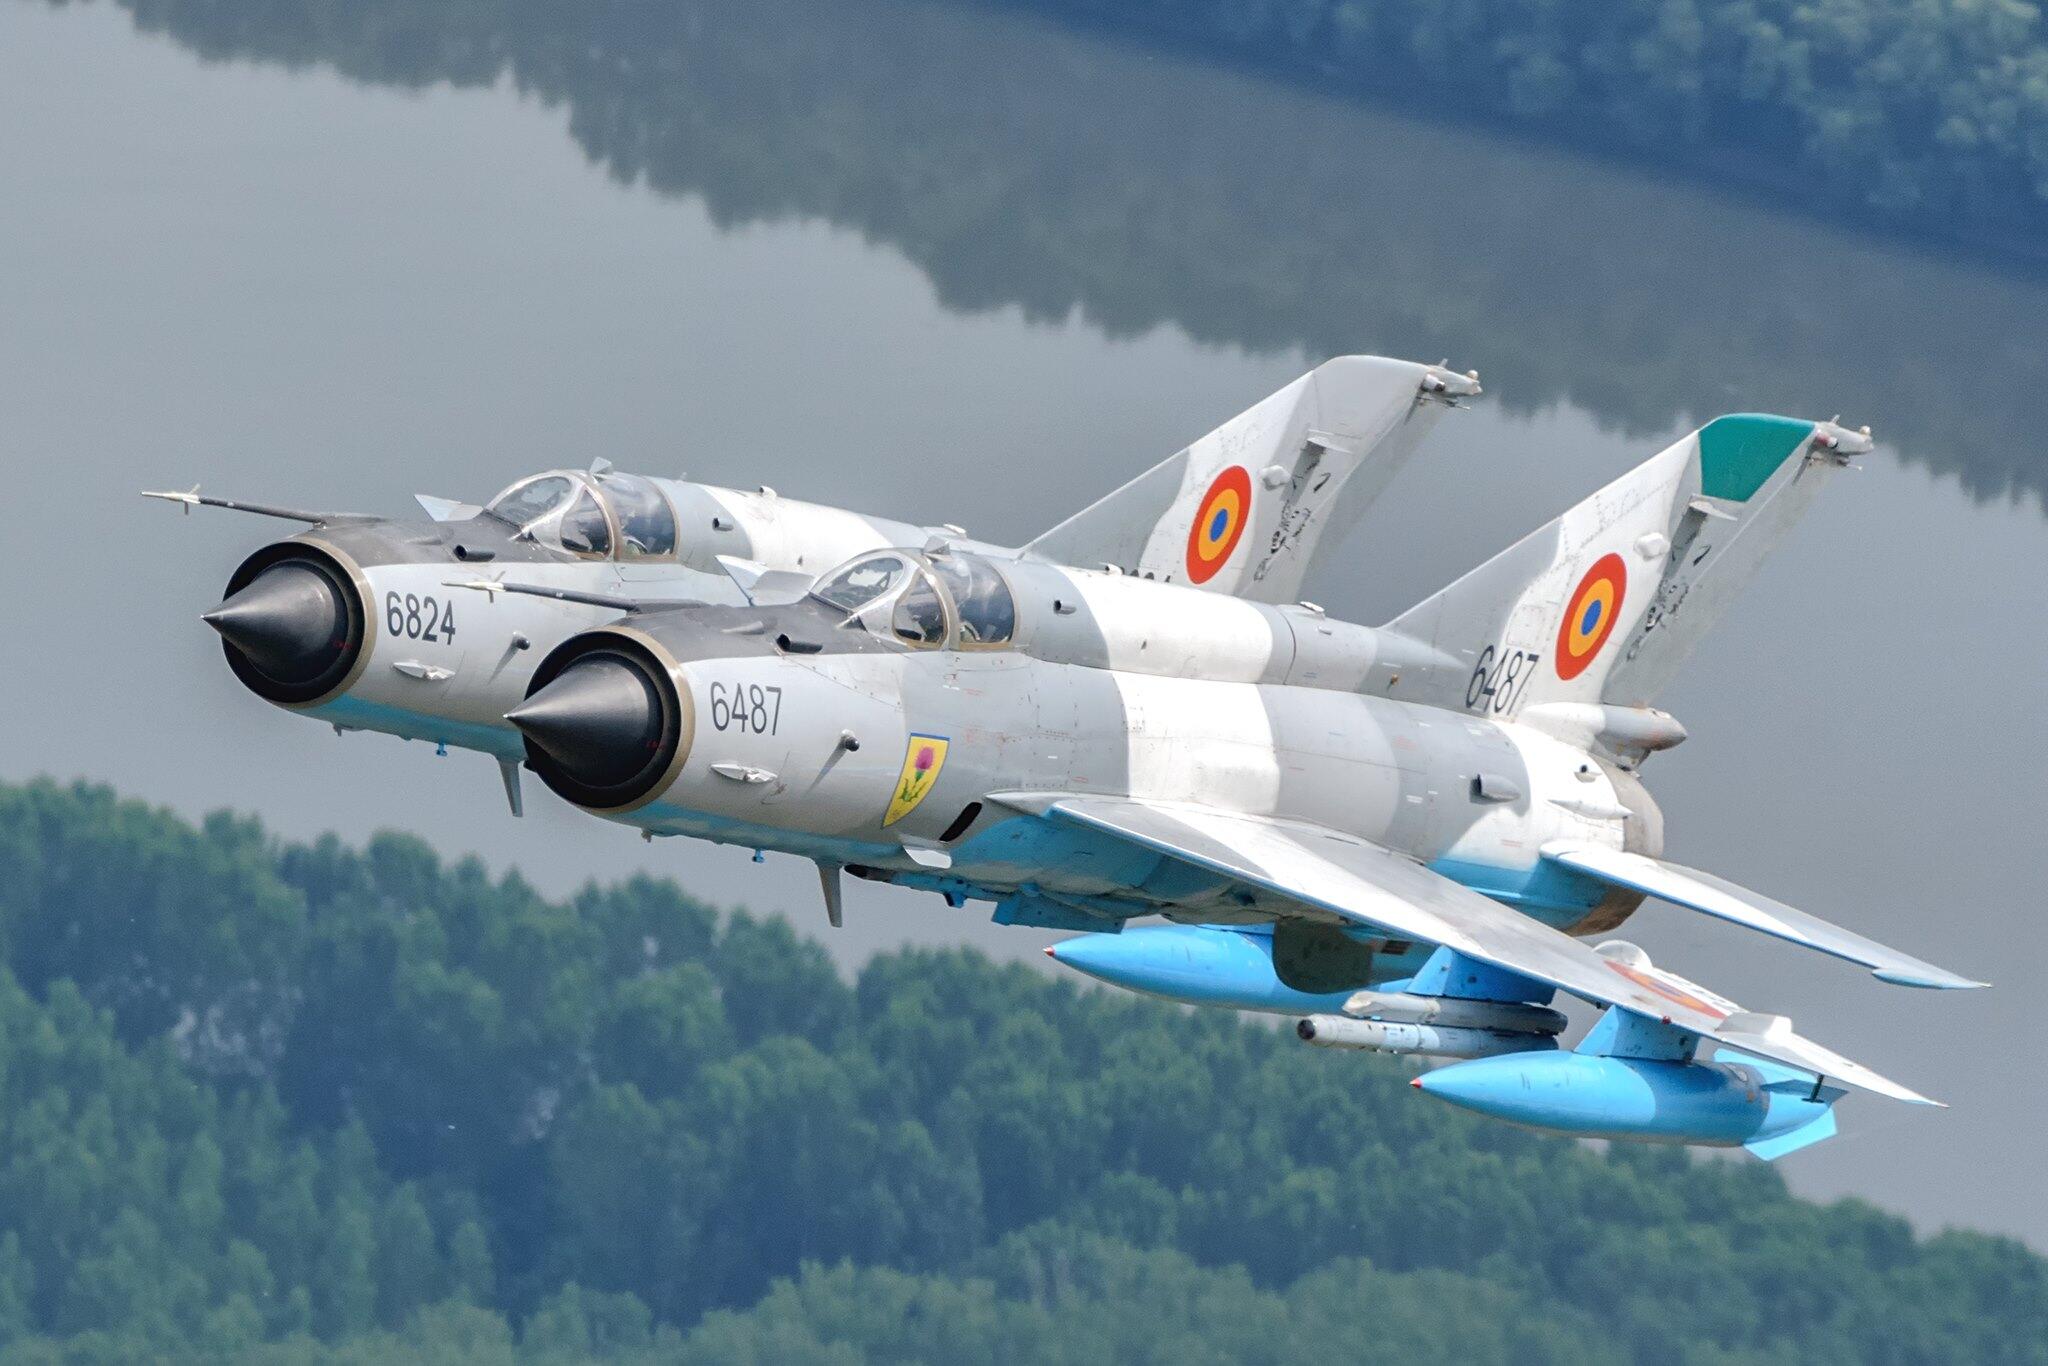 War Thunder: documentos confidenciais do caça F-16 vazam no fórum do jogo